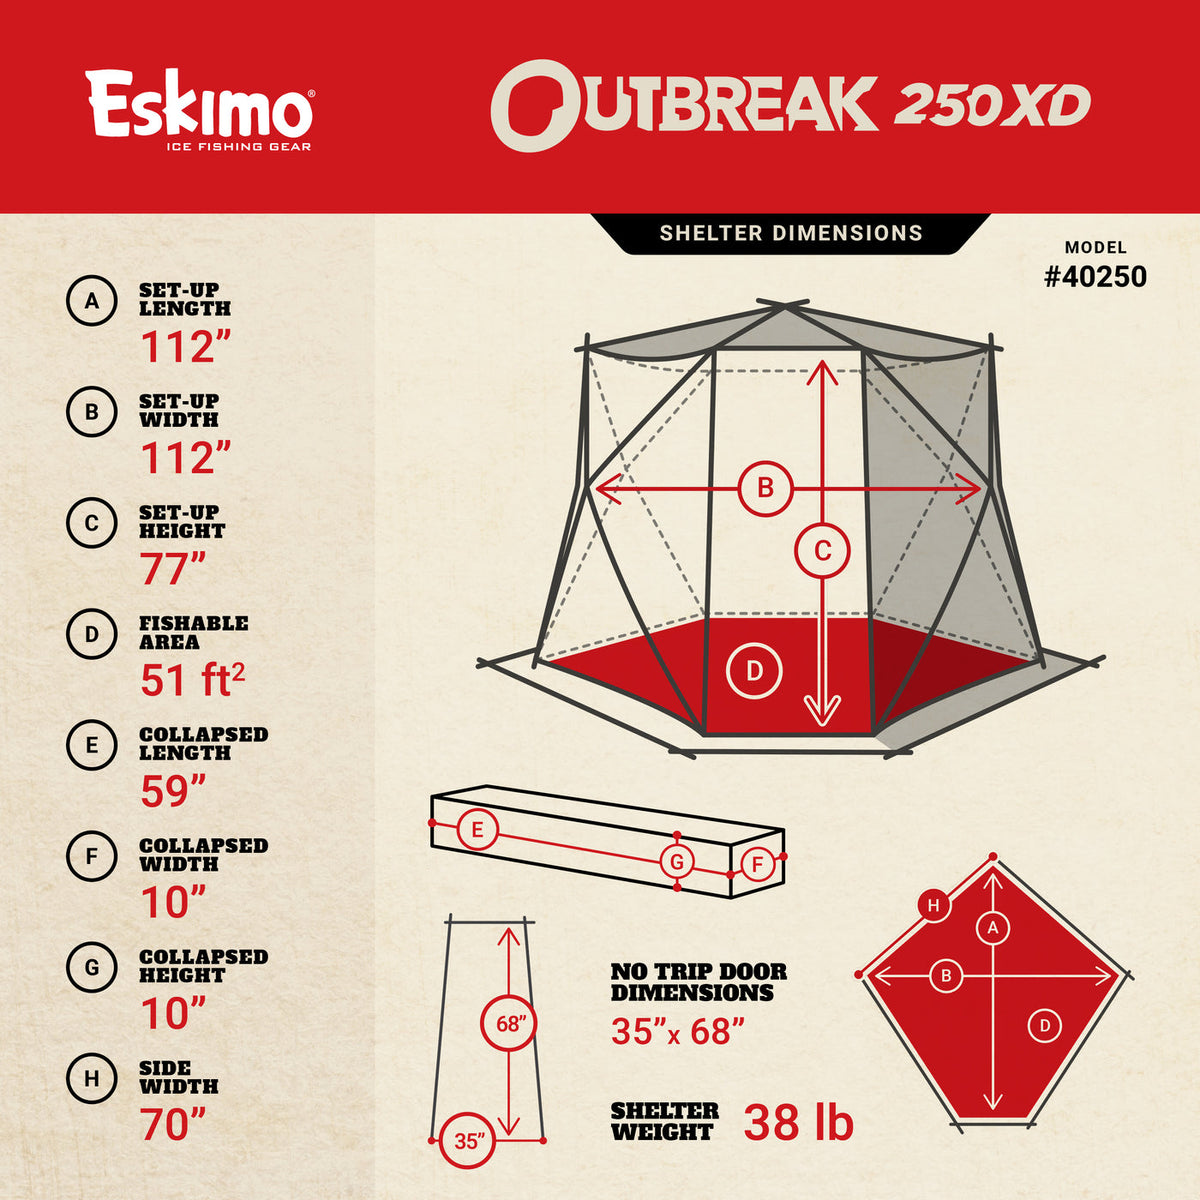 Eskimo Outbreak 250XD